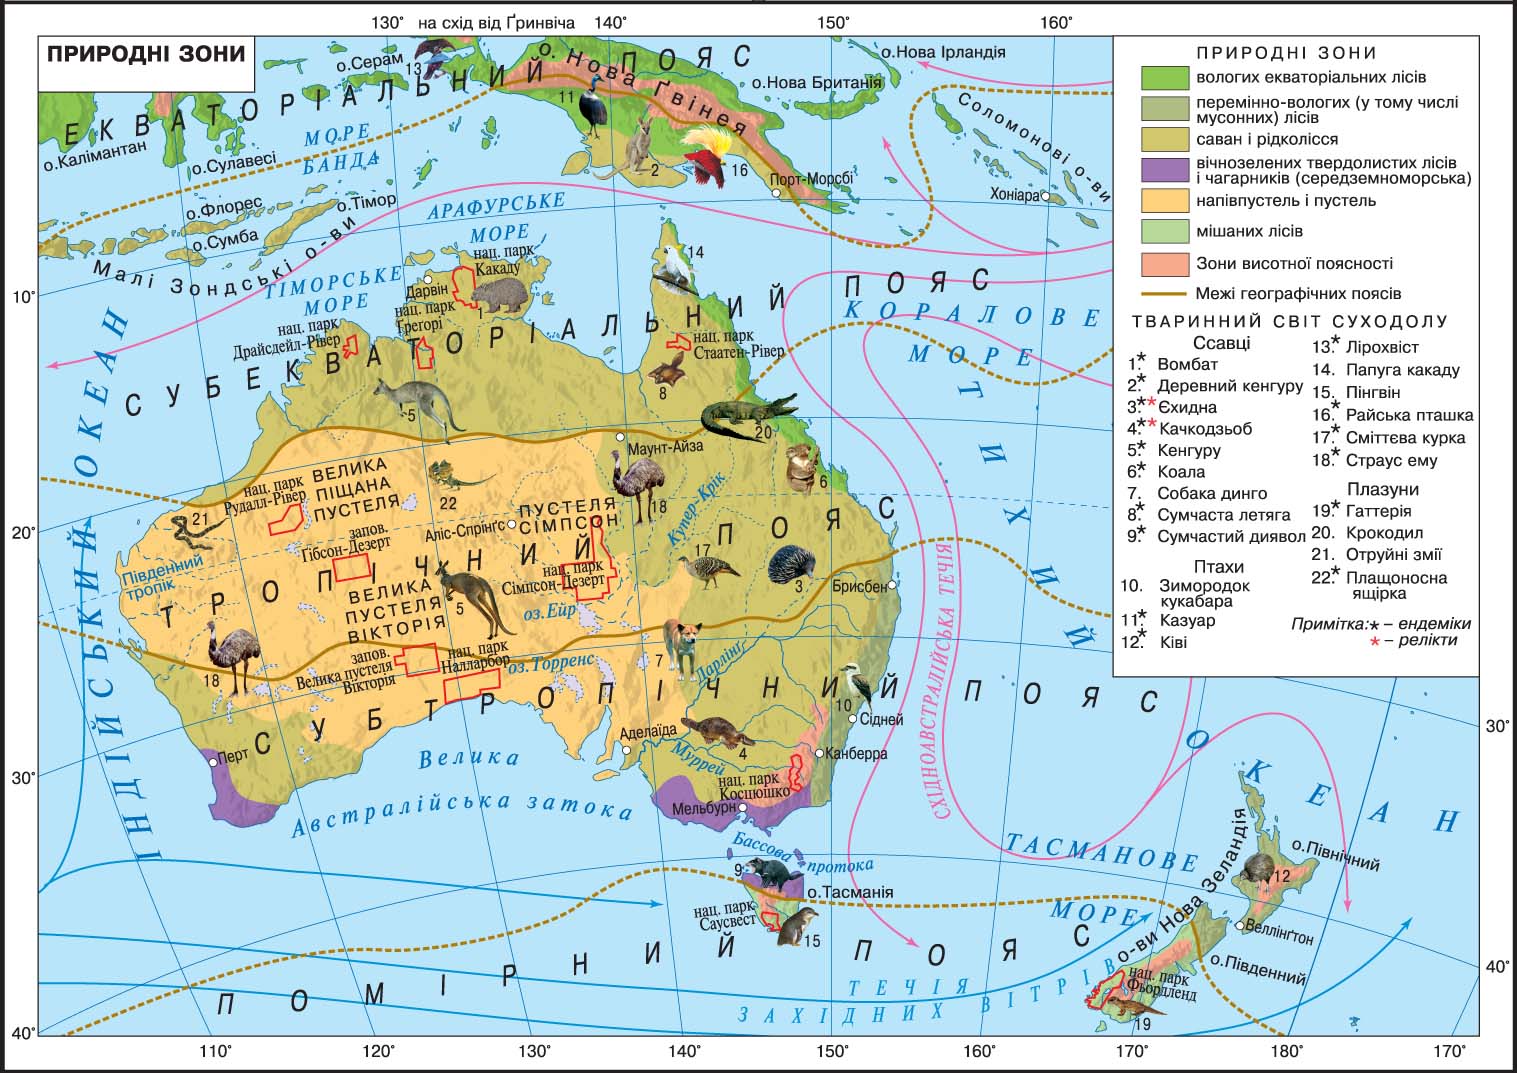 Природные зоны австралии и океании